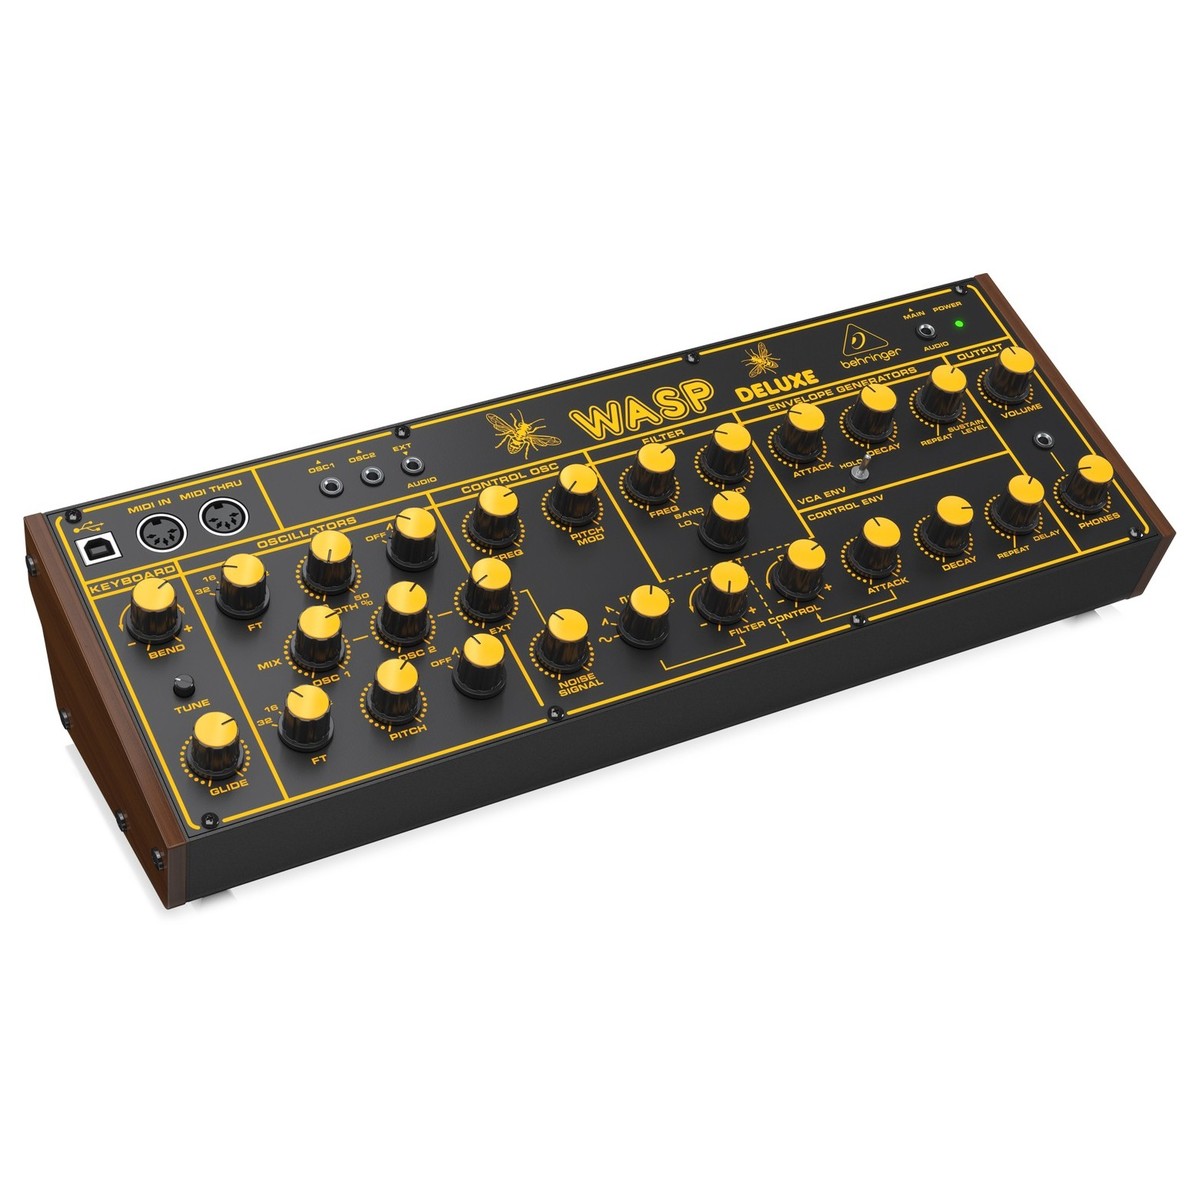 BEHRINGER WASP DELUXE SINTETIZZATORE ANALOGICO MONOFONICO MIDI USB 4